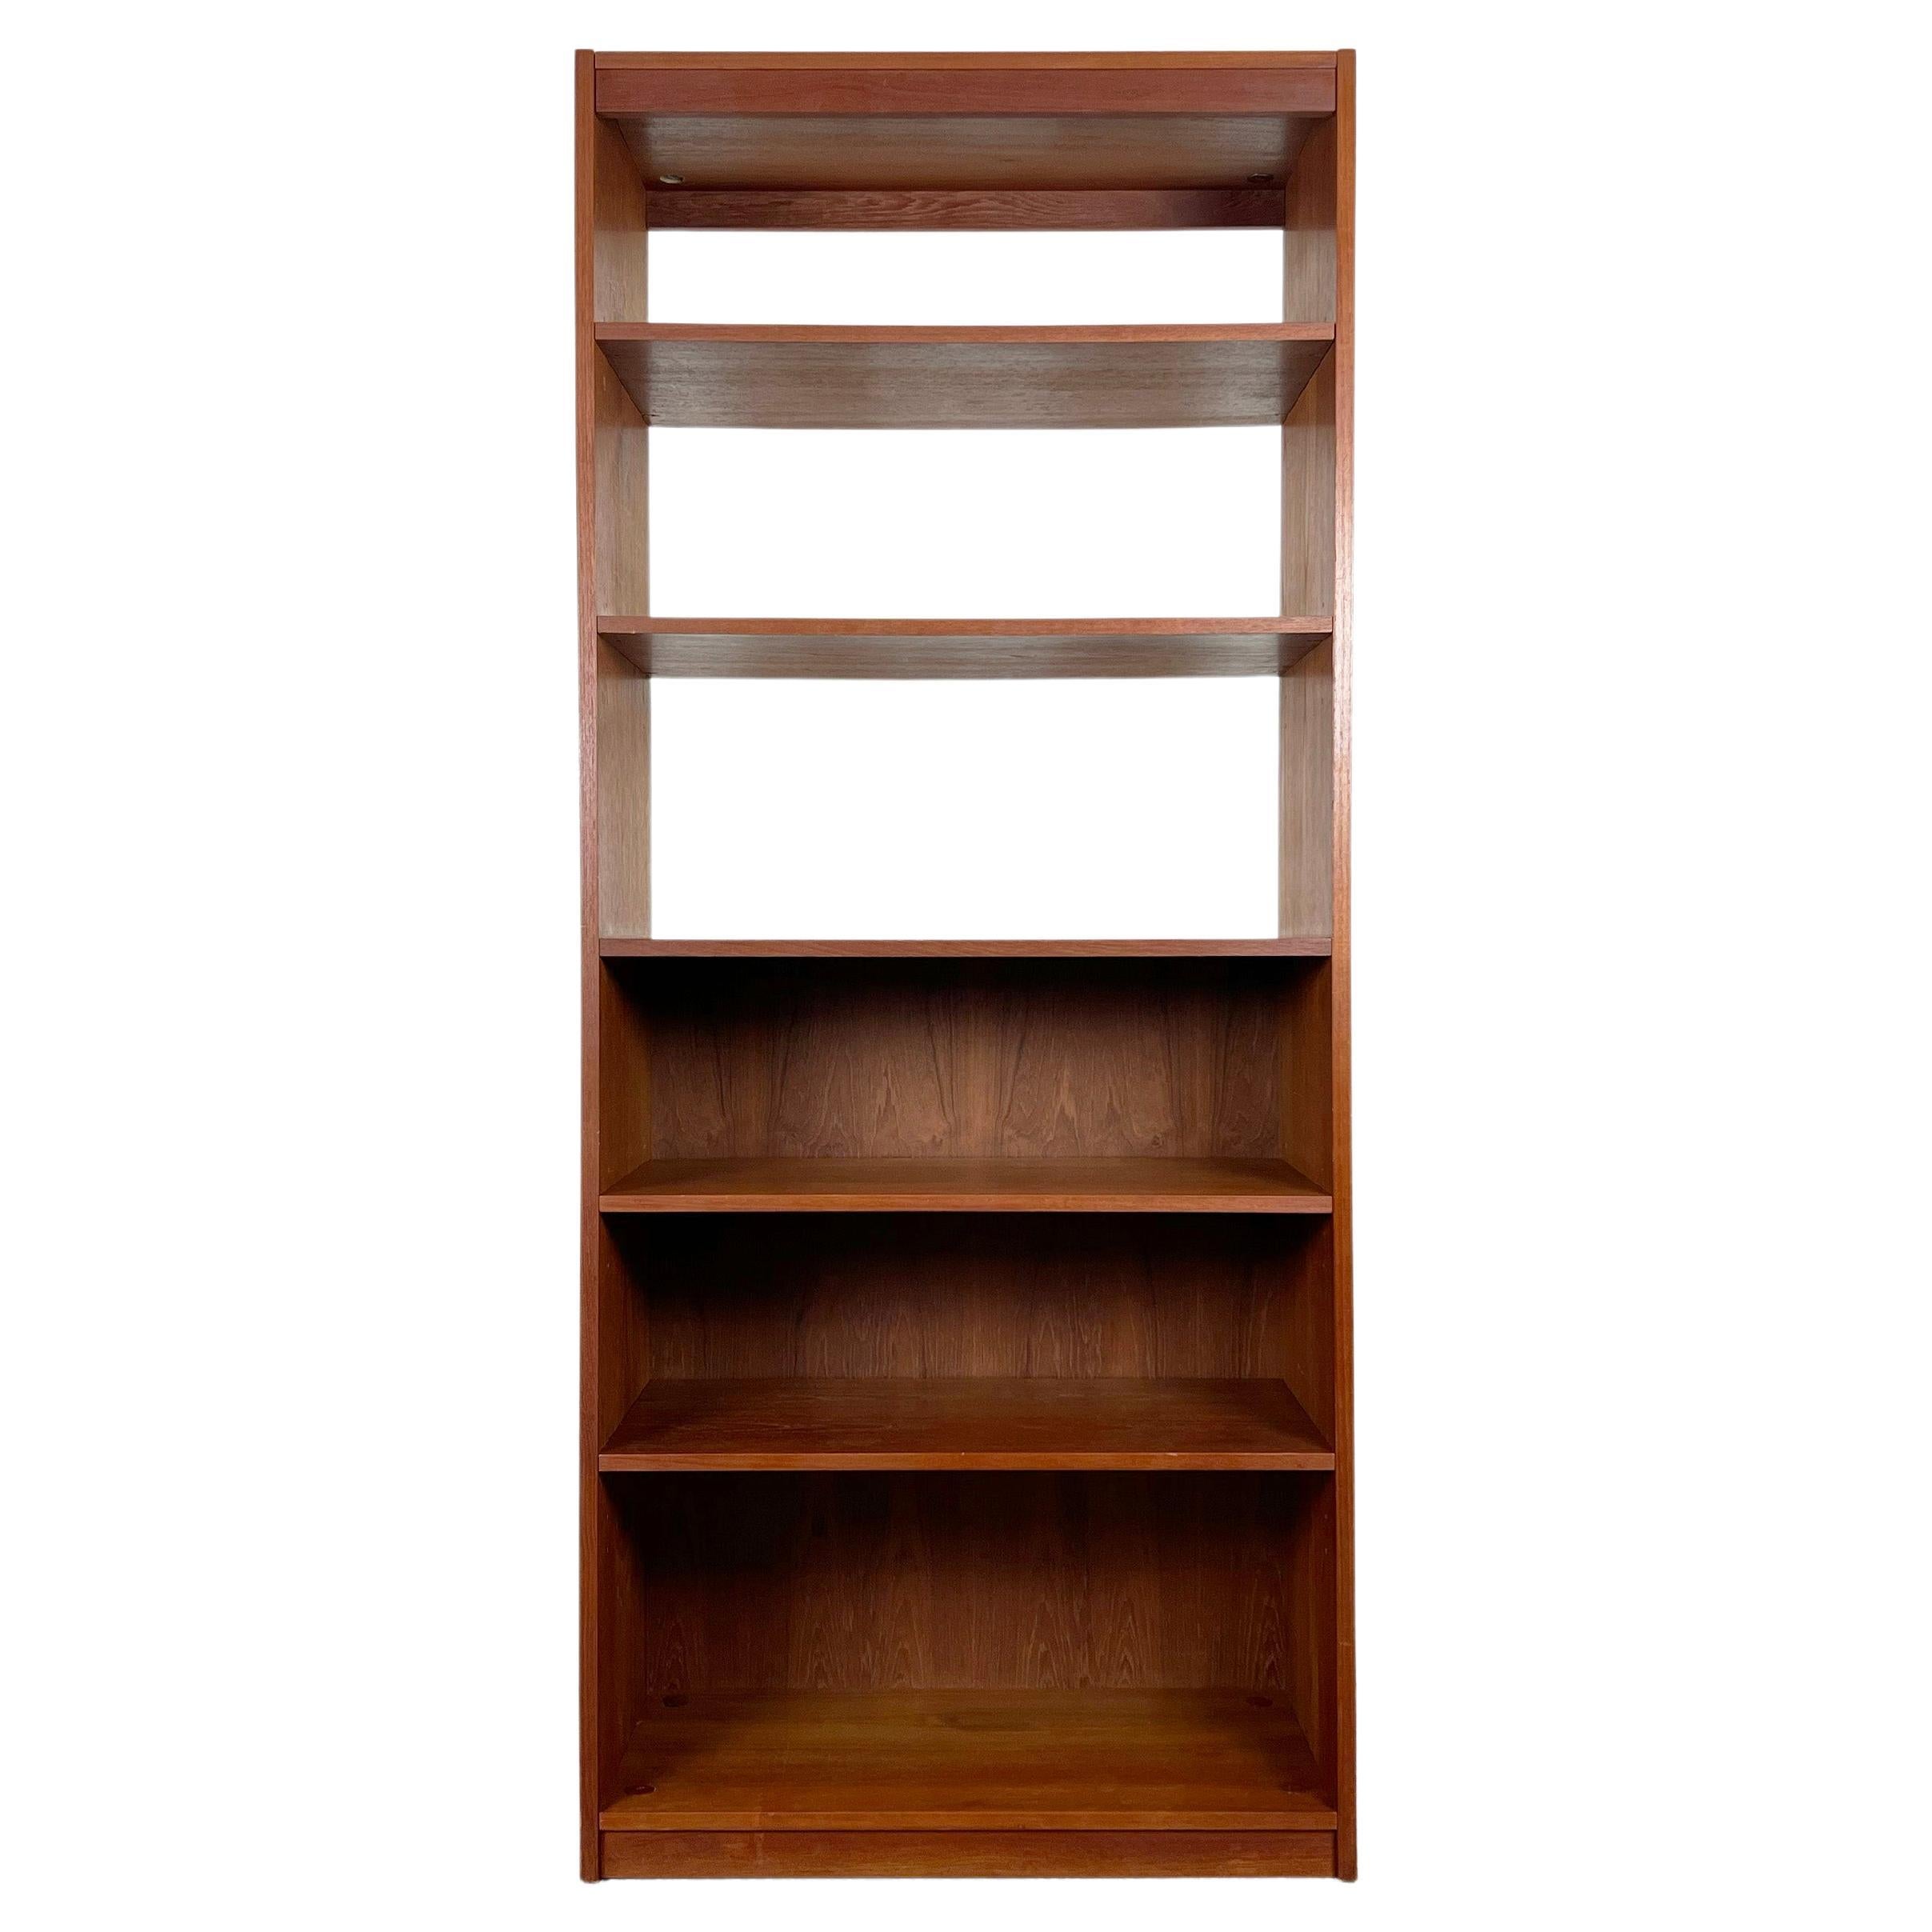 Danish Teak Open Shelf Bookcase